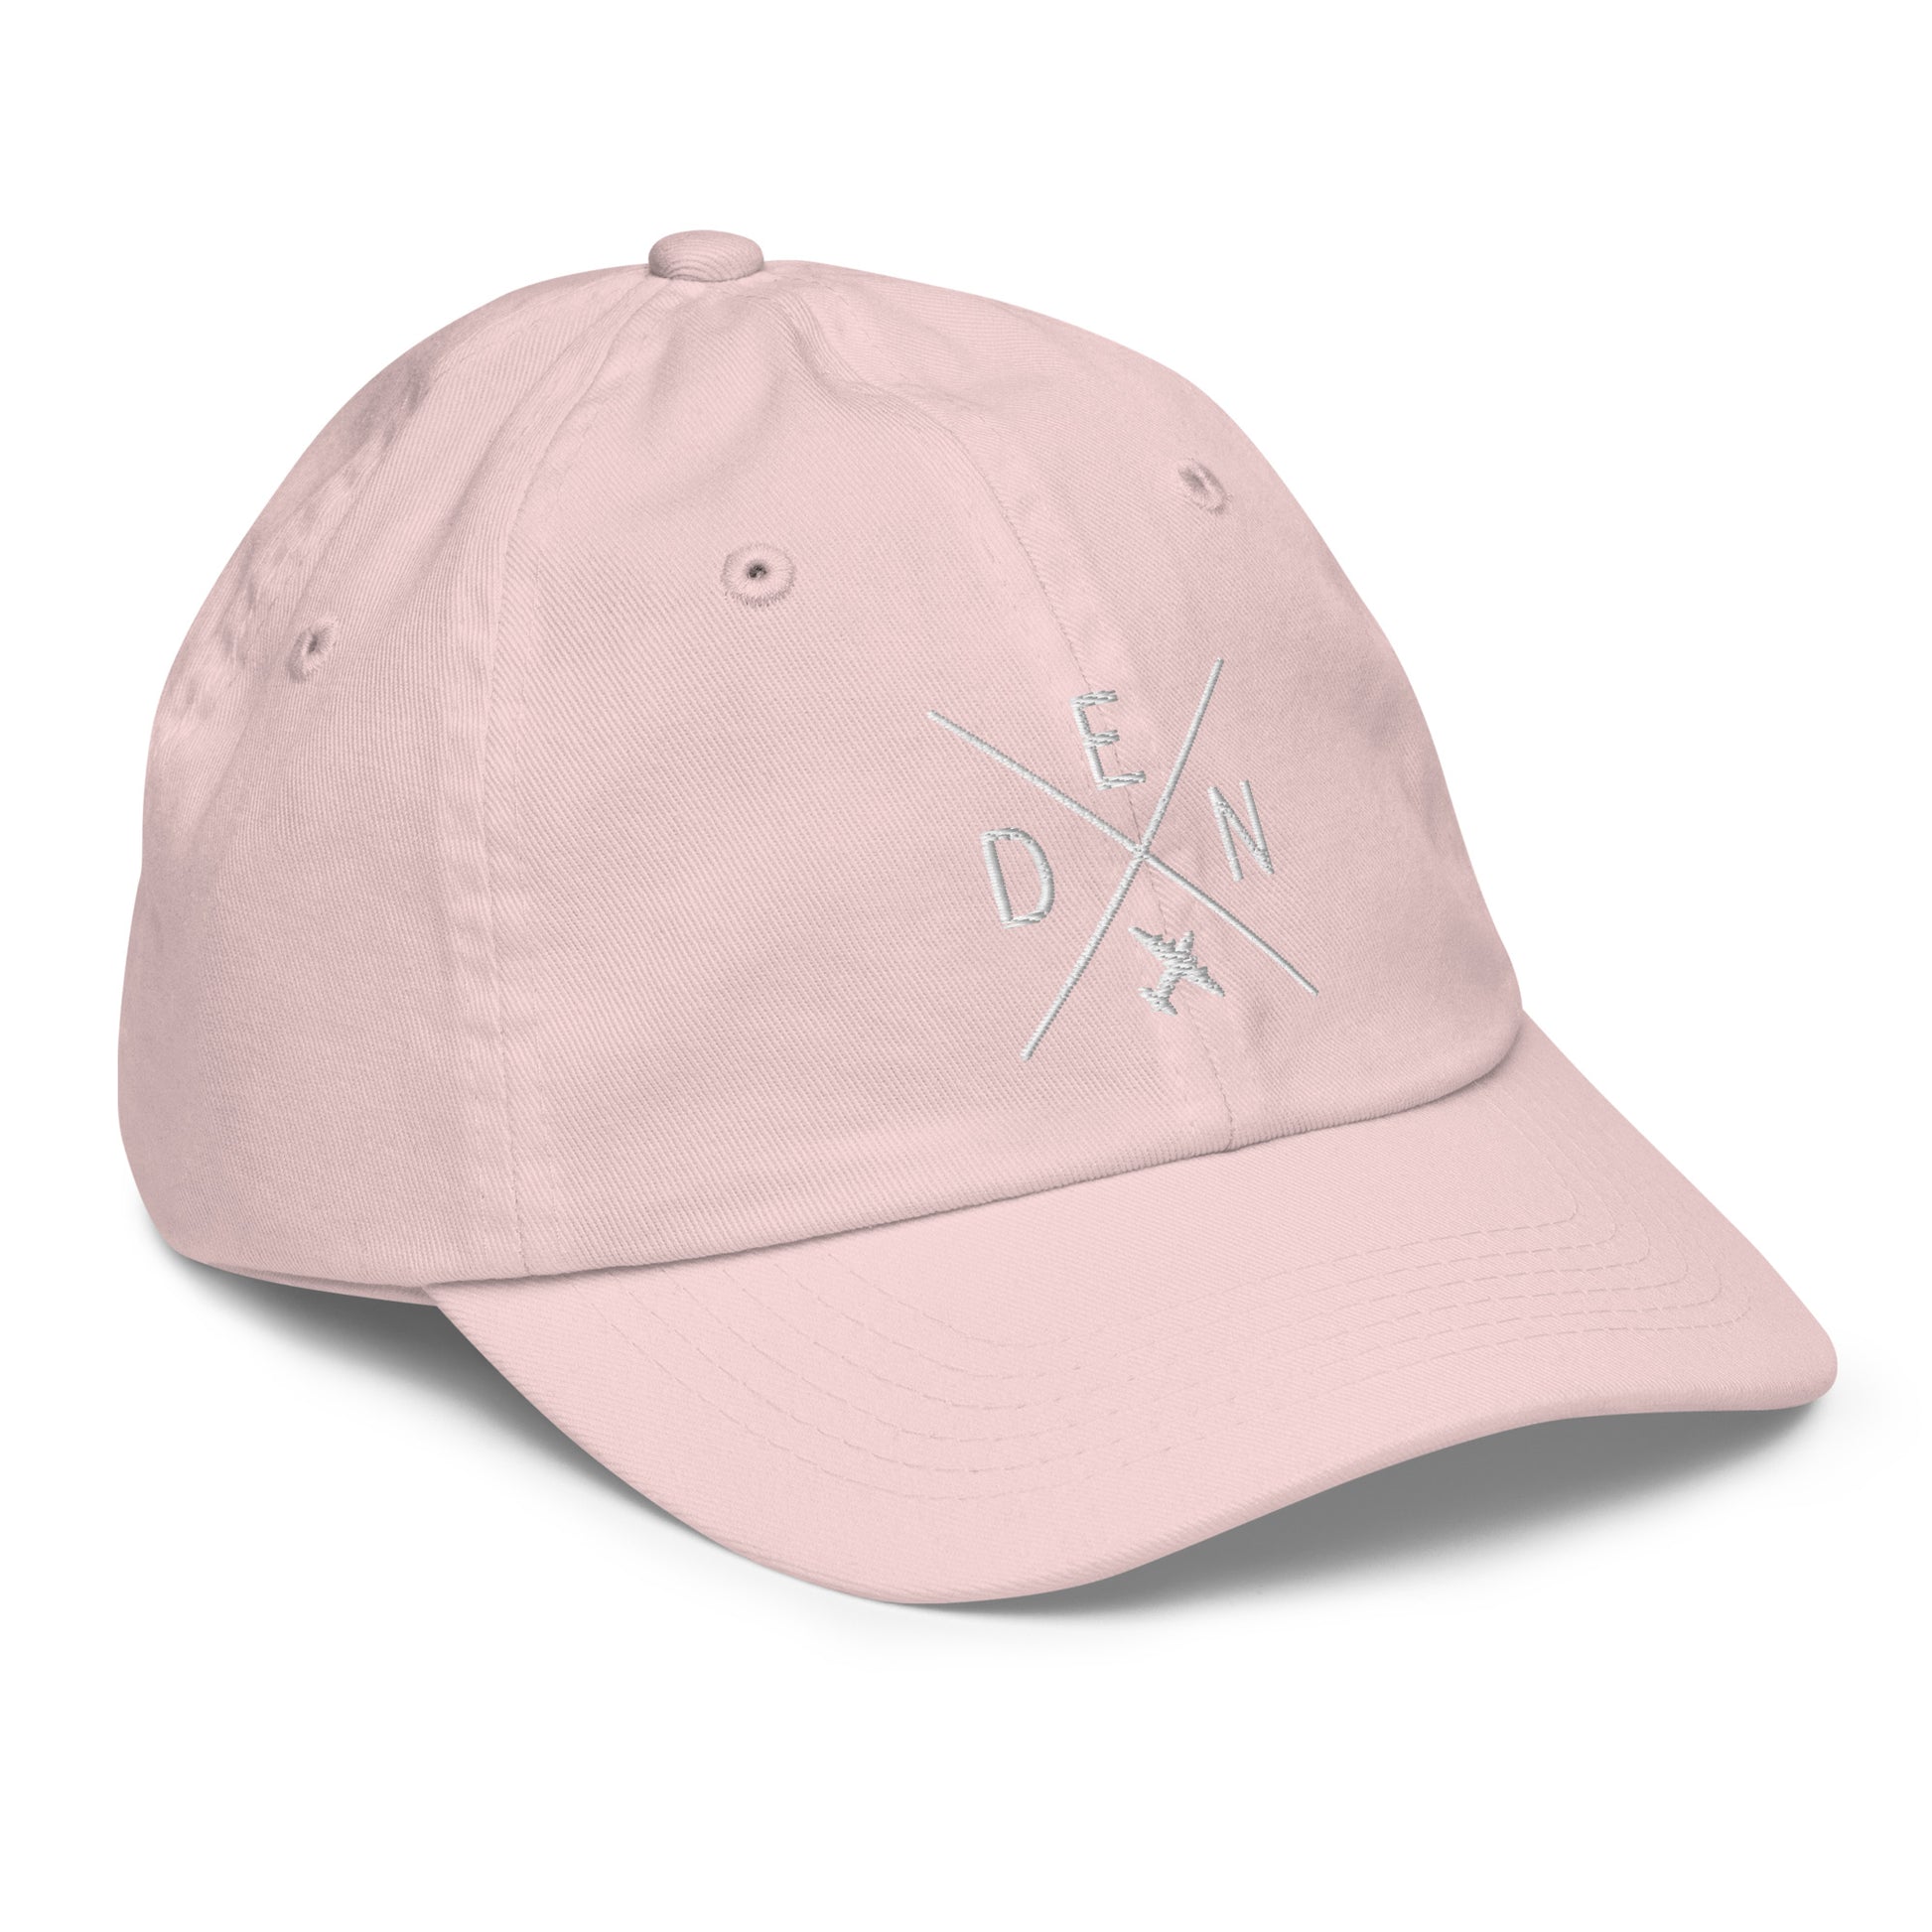 Crossed-X Kid's Baseball Cap - White • DEN Denver • YHM Designs - Image 32